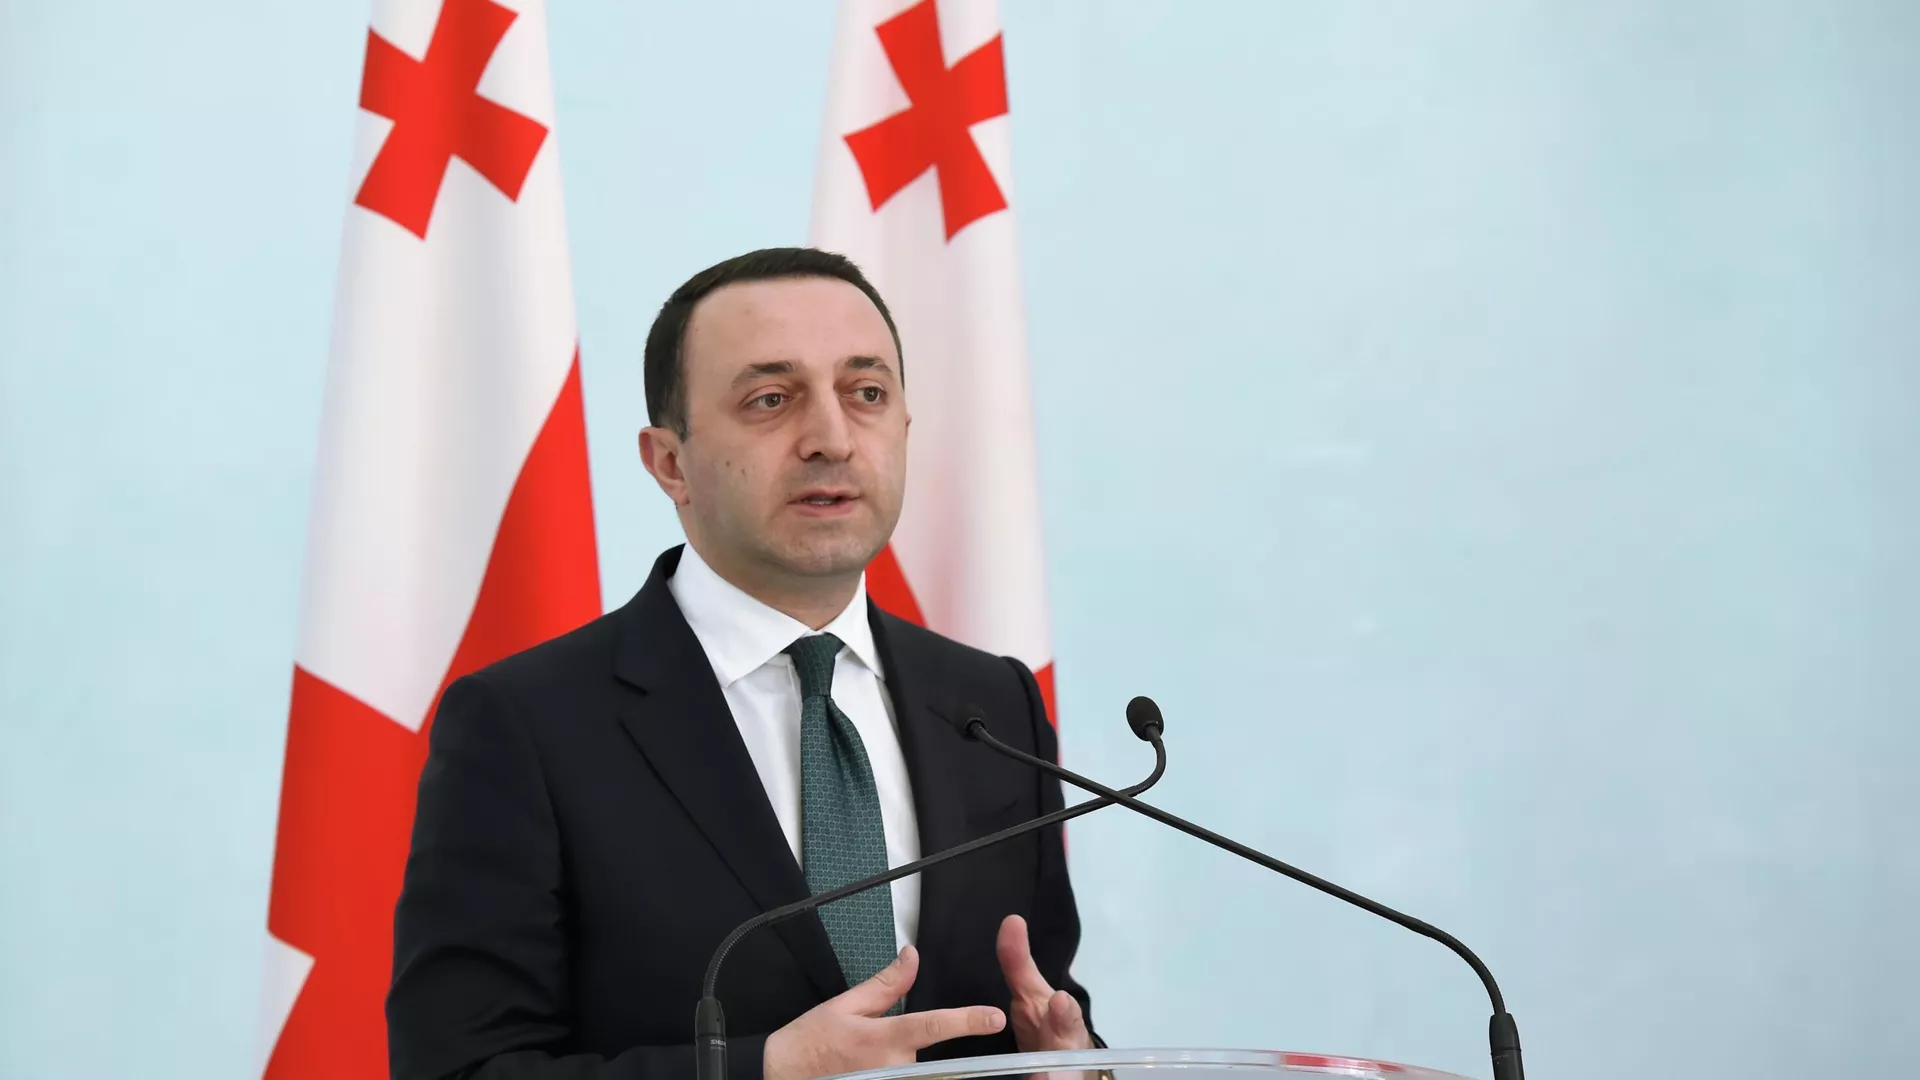 Гарибашвили: Грузия упразднит закон об иноагентах, когда ее позовут в ЕС